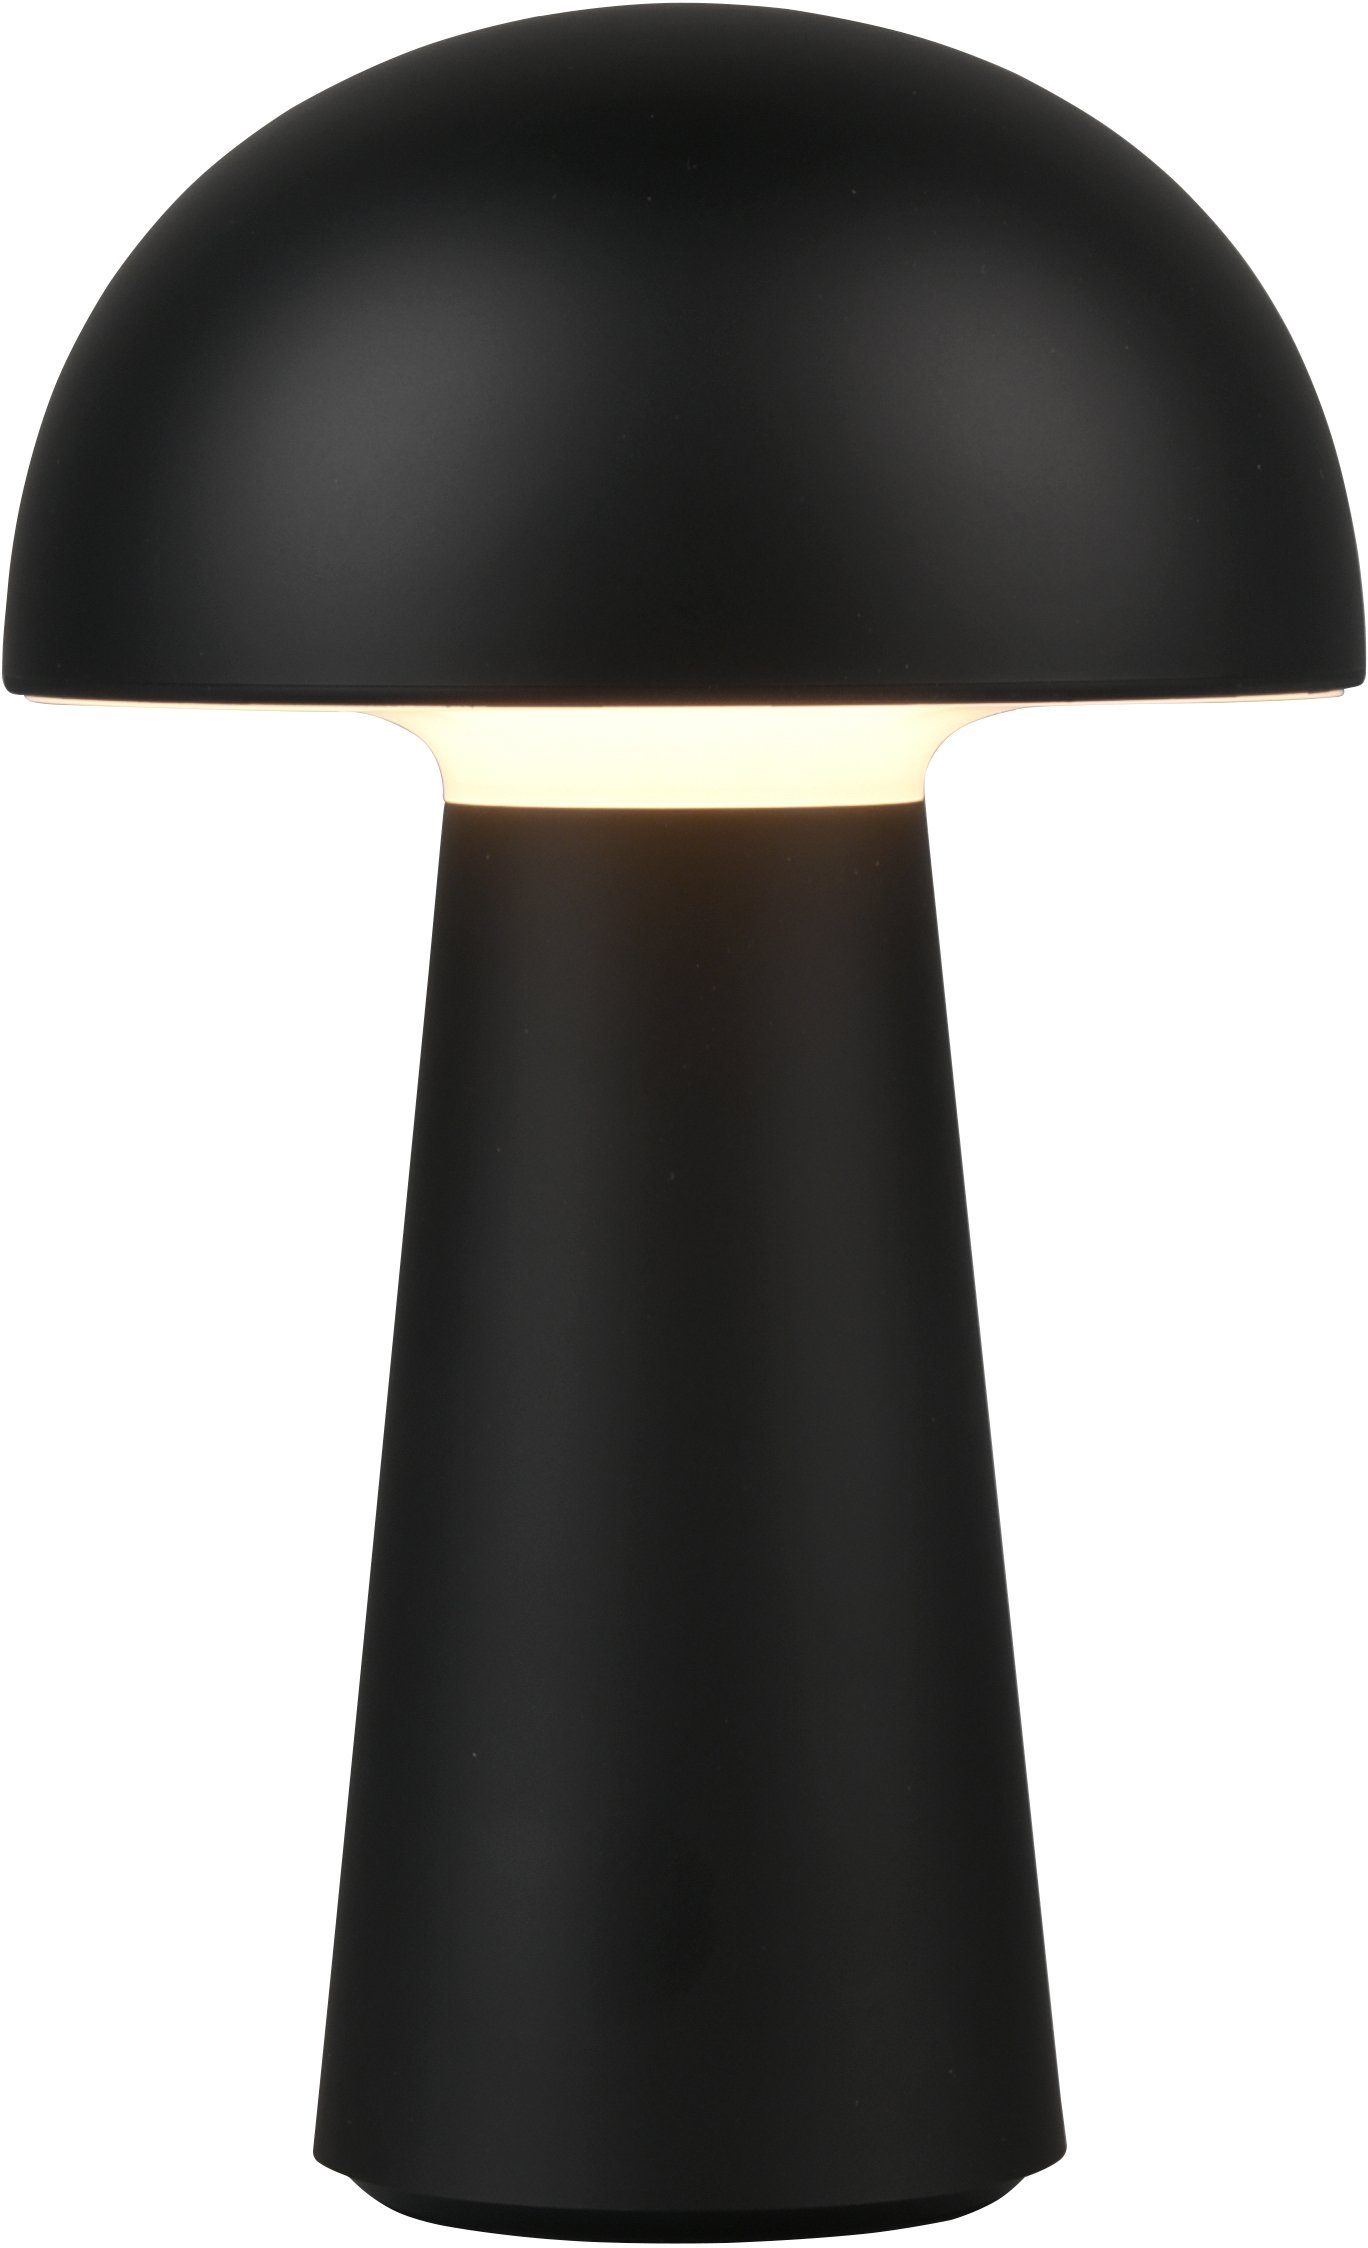 Dimmfunktion, Warmweiß, Tischlampe, TRIO LED fest schwarz LED Lennon, integriert, Touchdimmer, 2er Set 4-fach Leuchten Außen-Tischleuchte USB, IP44 Ladefunktion LED per